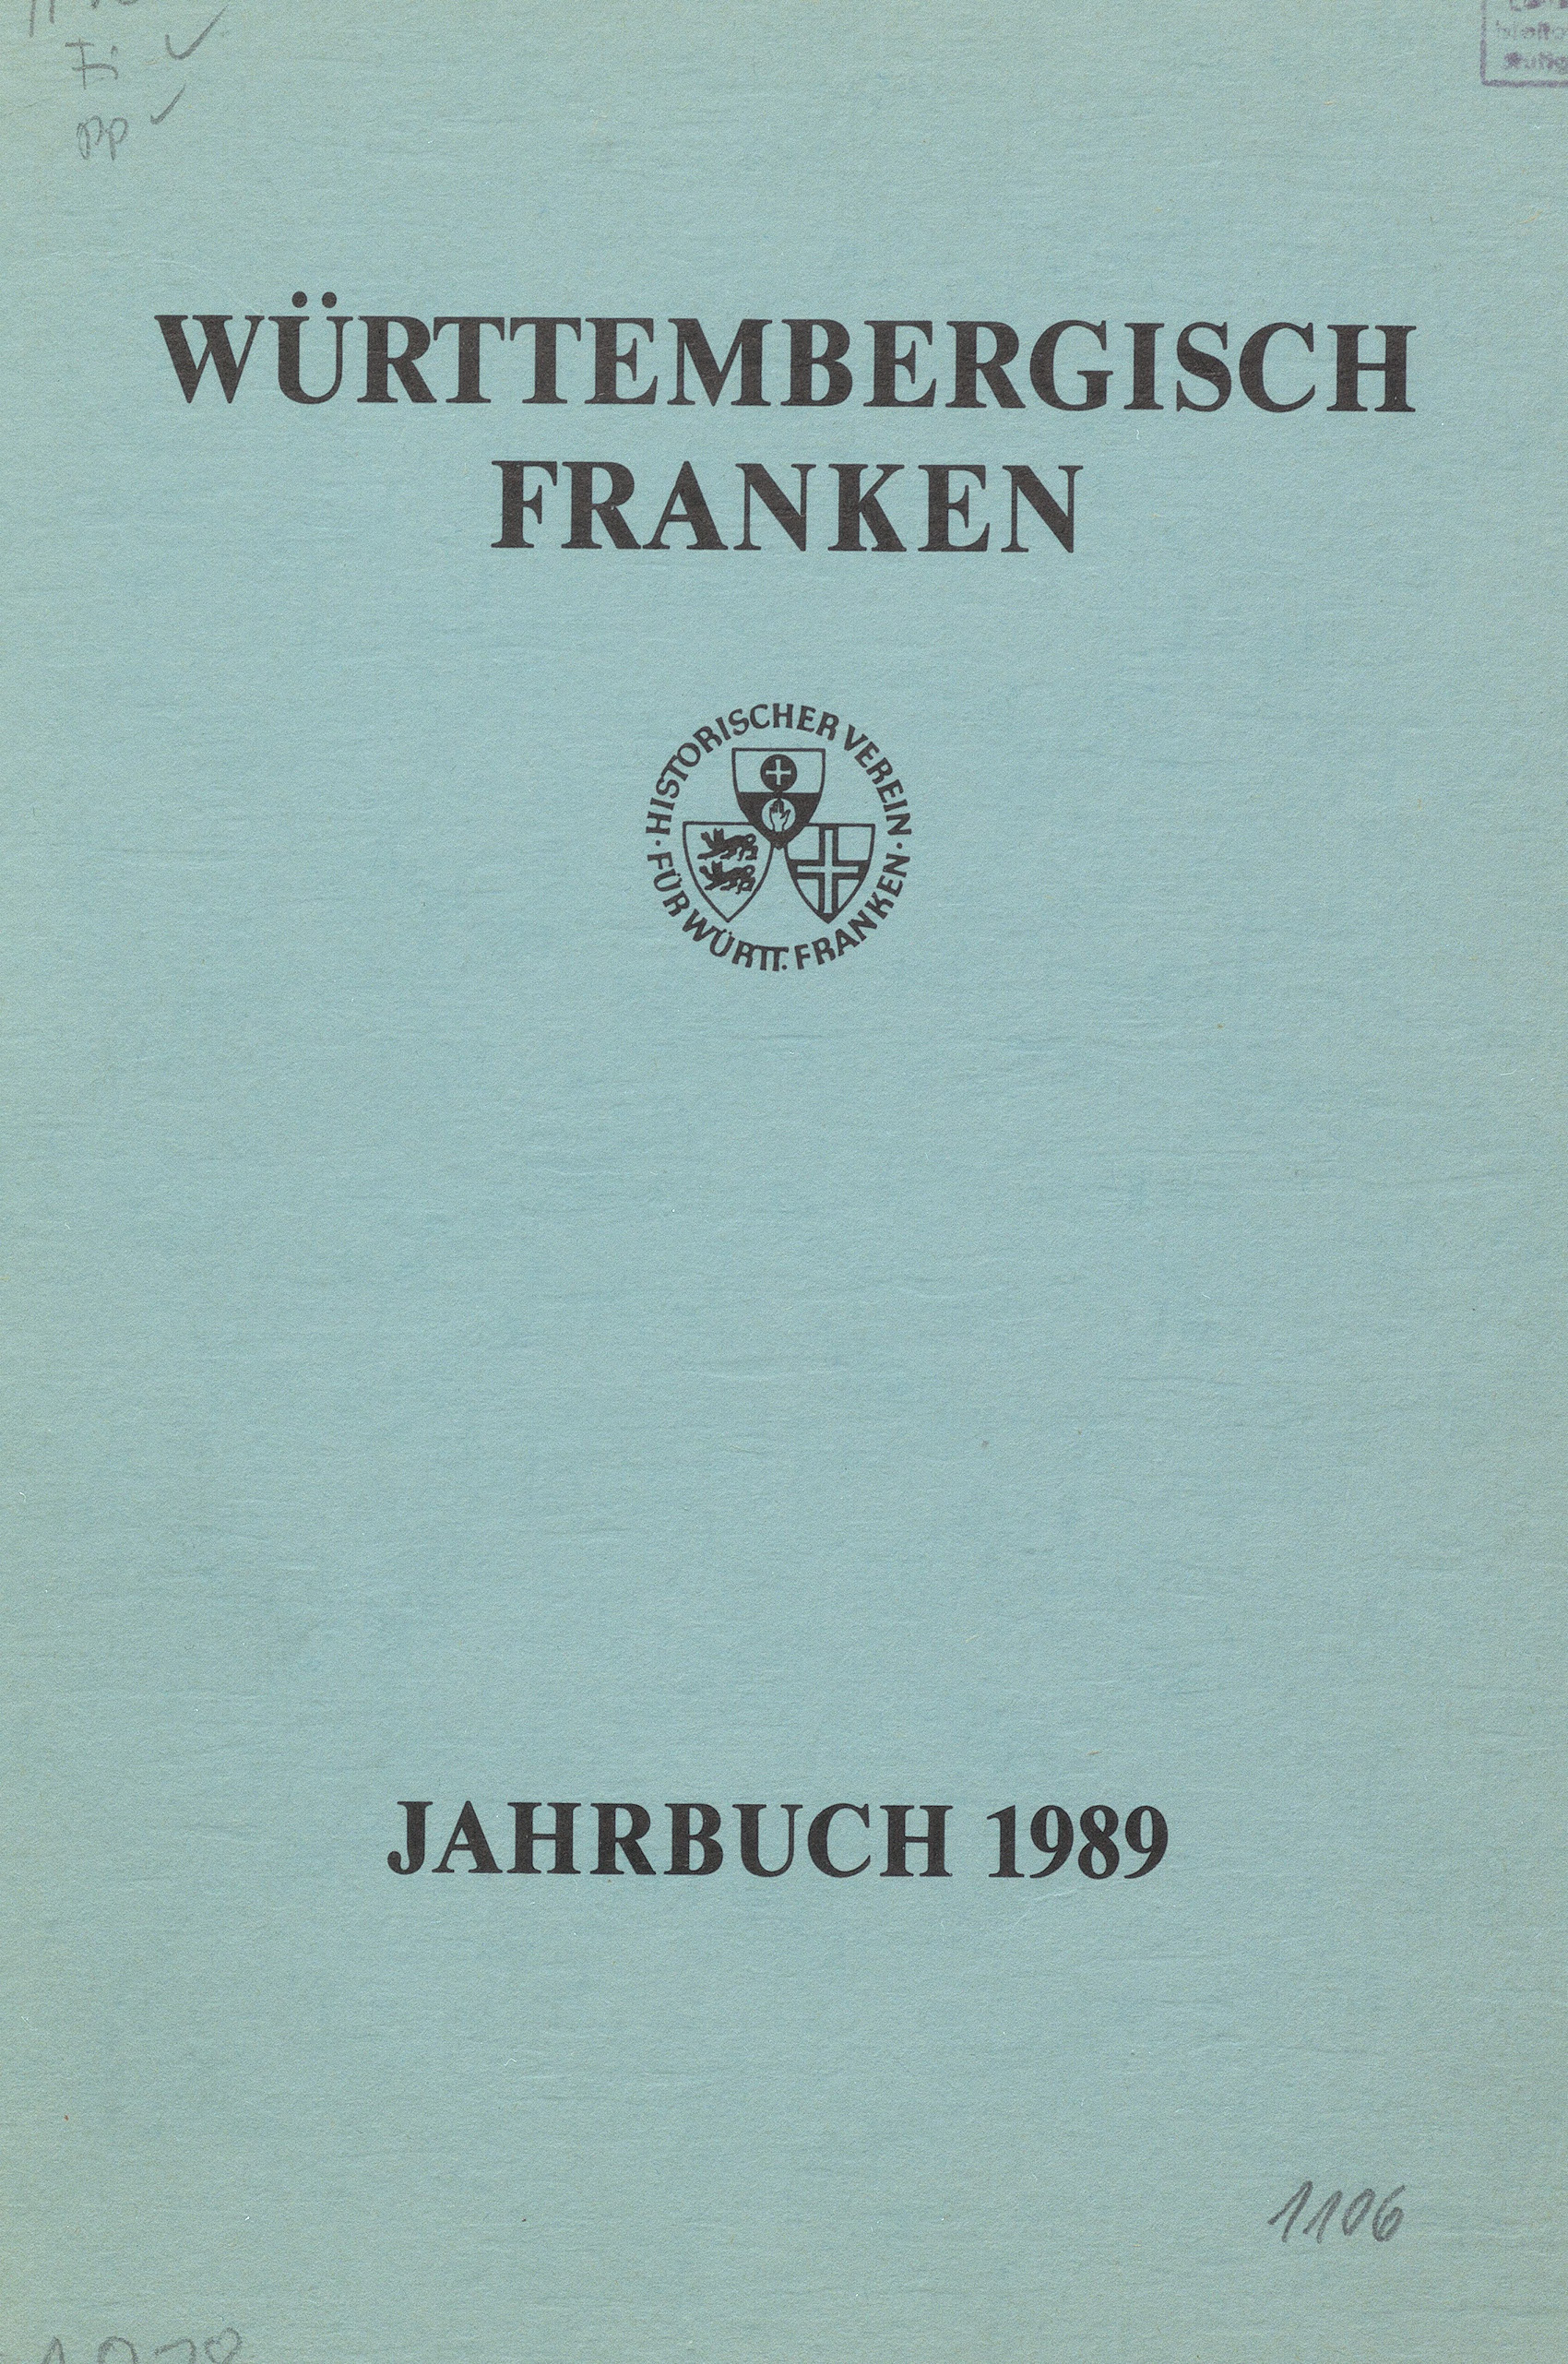                     Ansehen Bd. 73 (1989): Württembergisch Franken
                